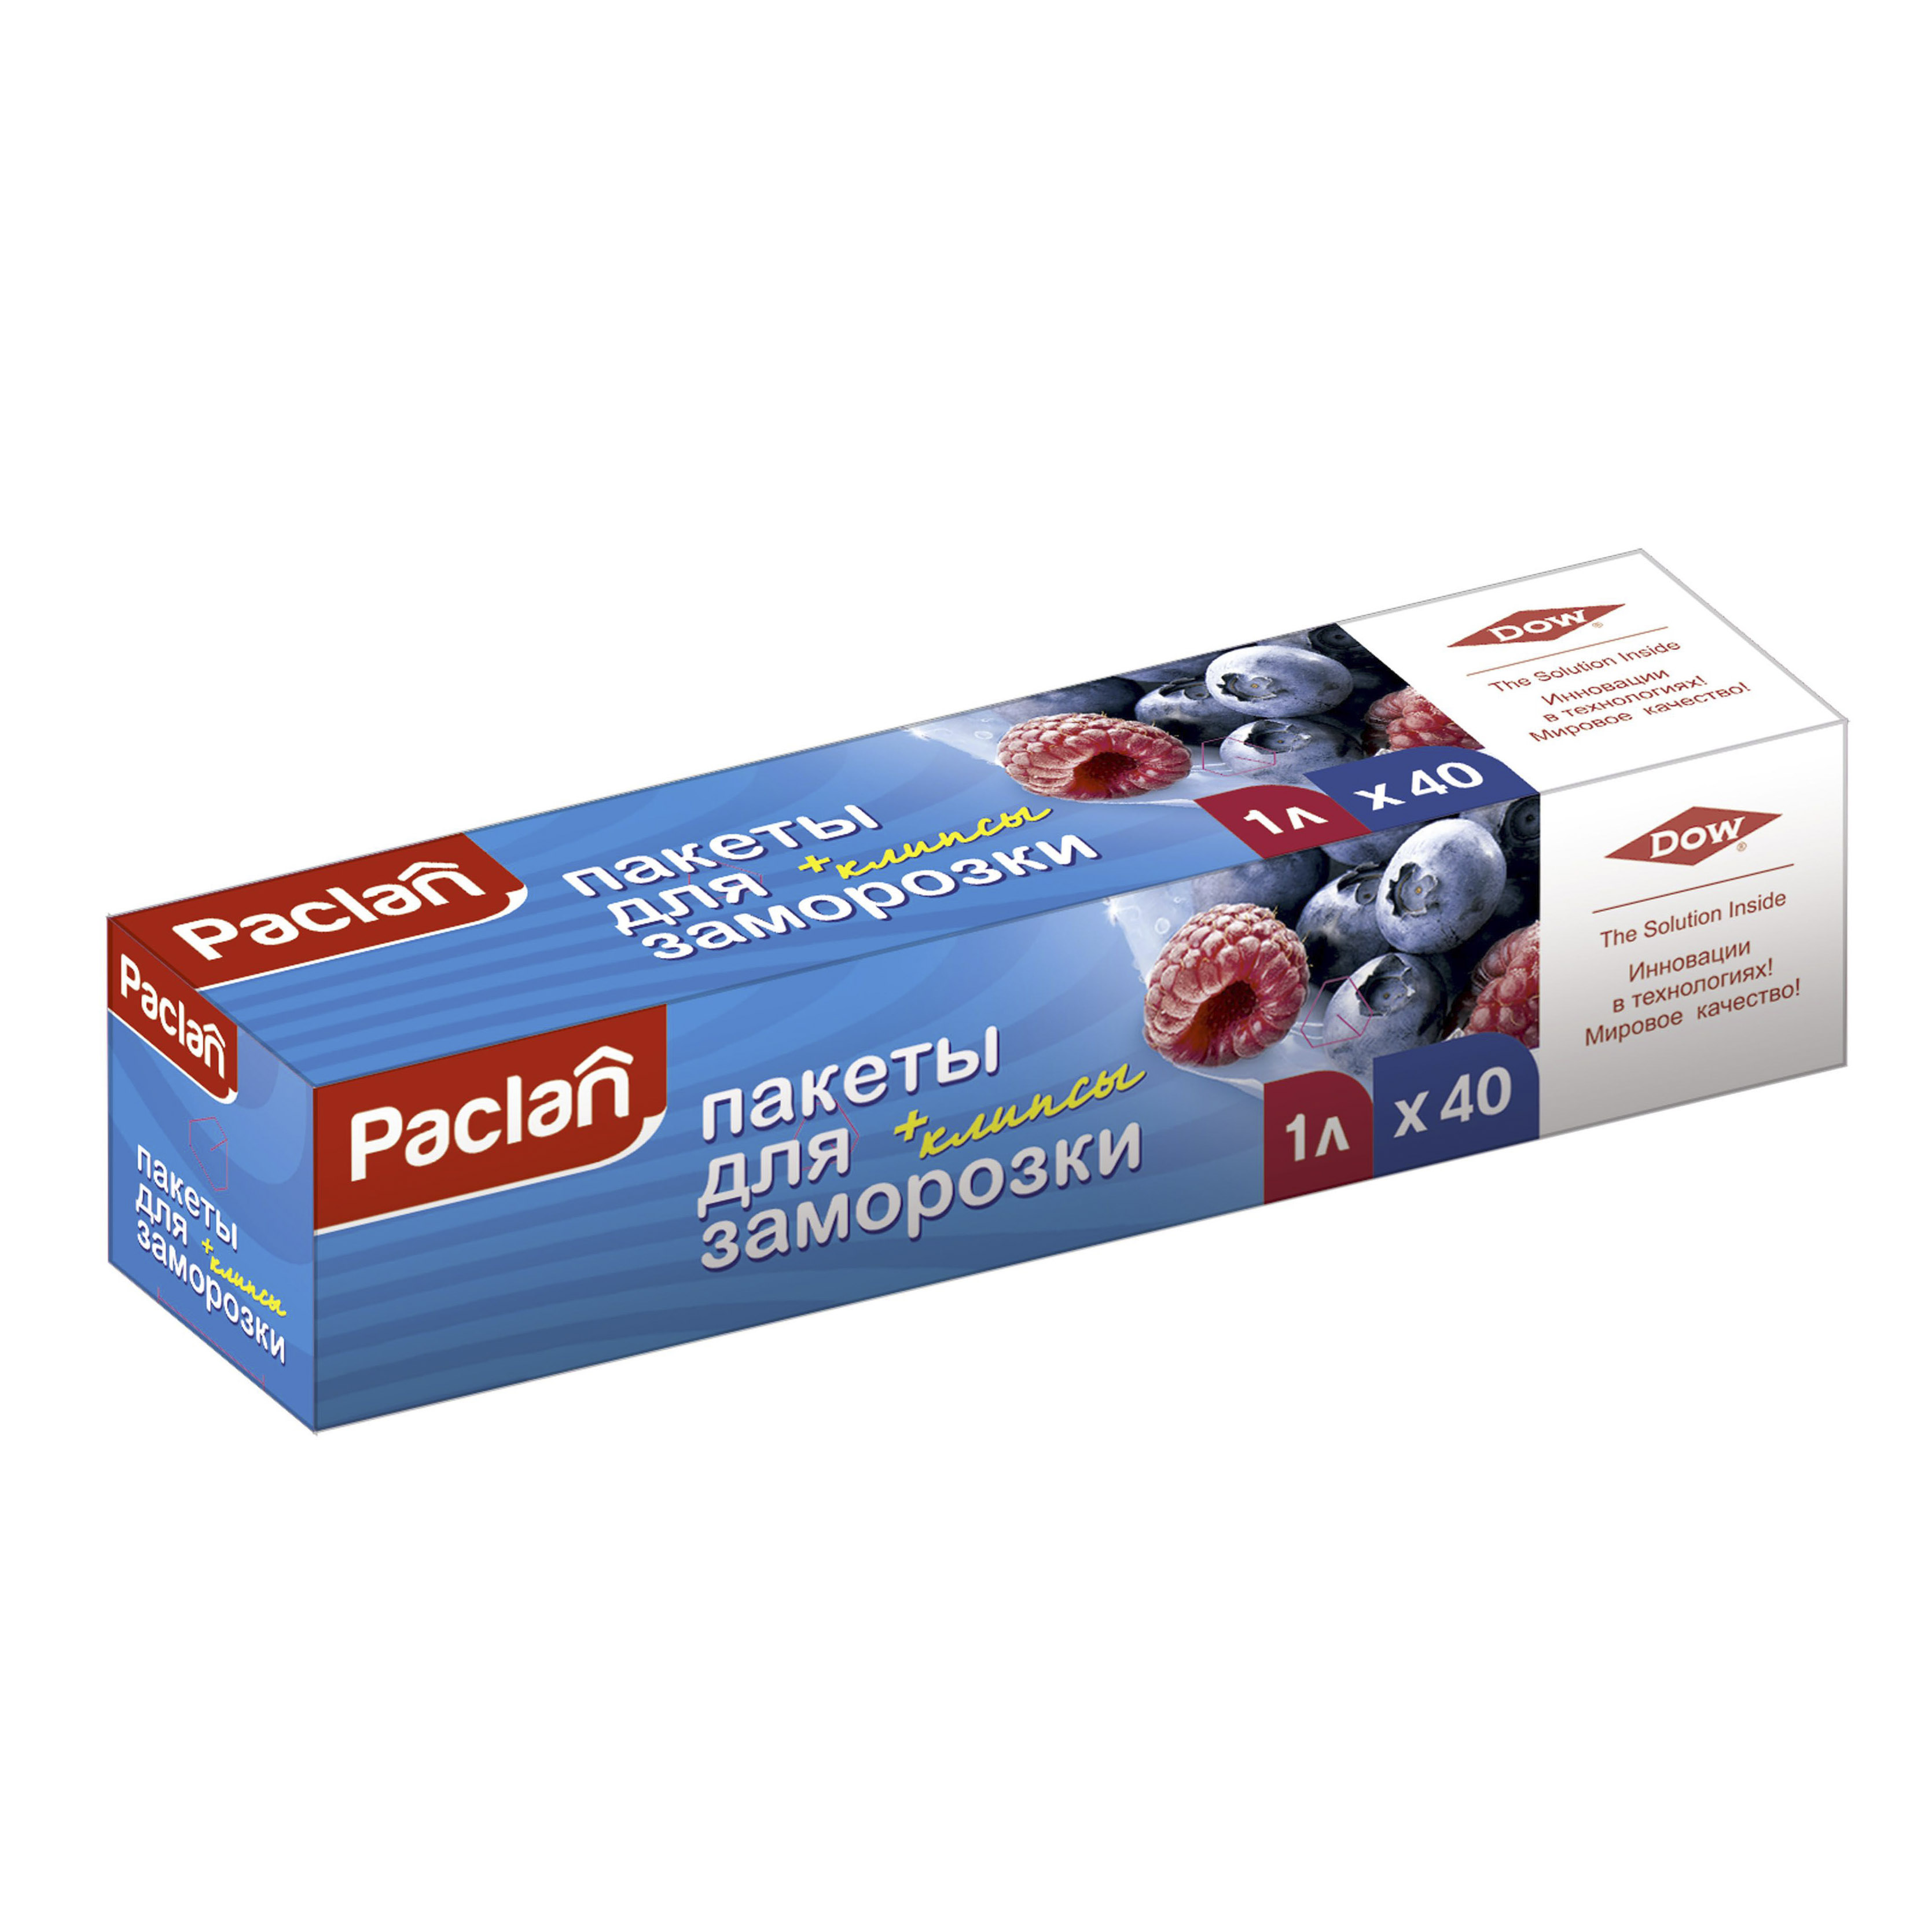 Пакеты Paclan для хранения и замораживания продуктов 1 л 40 шт